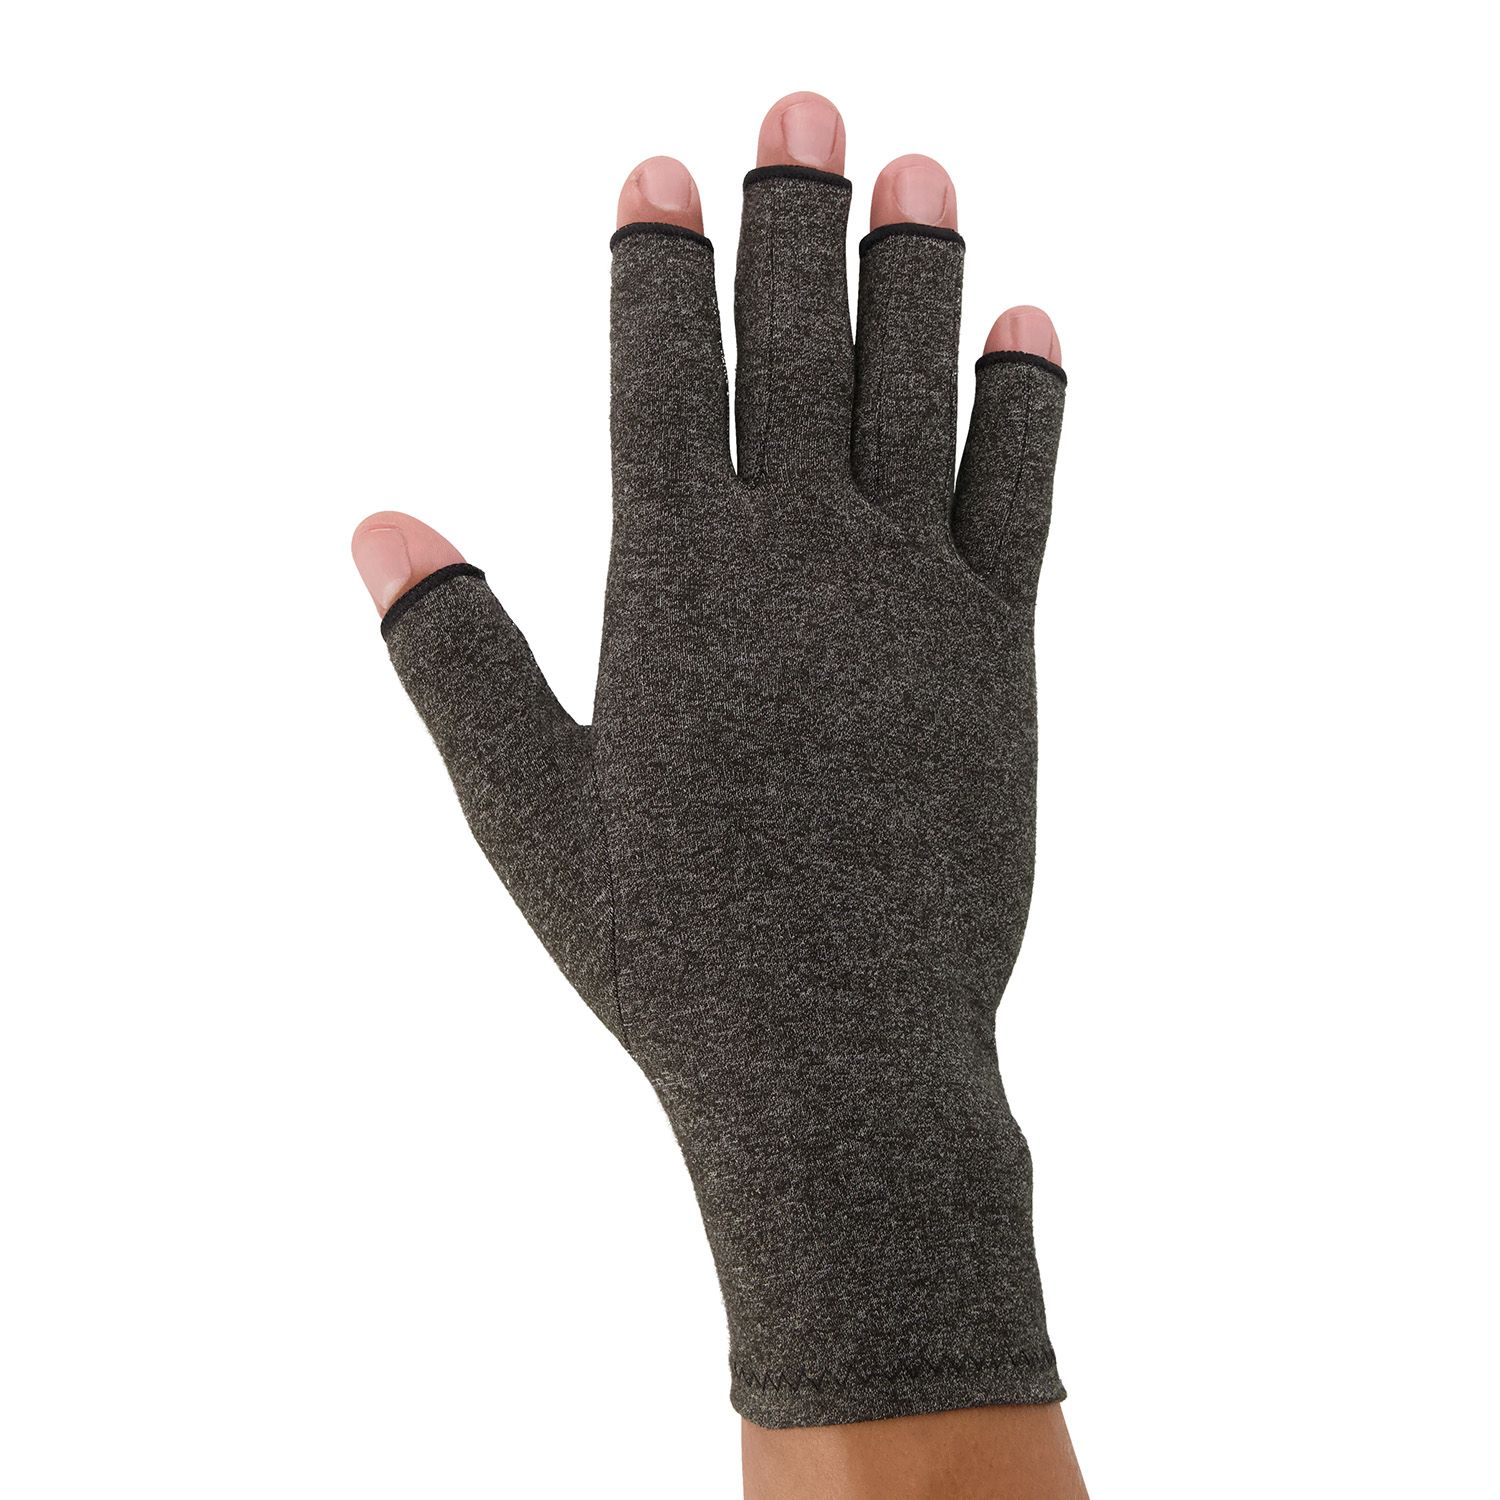 dunimed rheumatoid arthritis osteoarthritis gloves